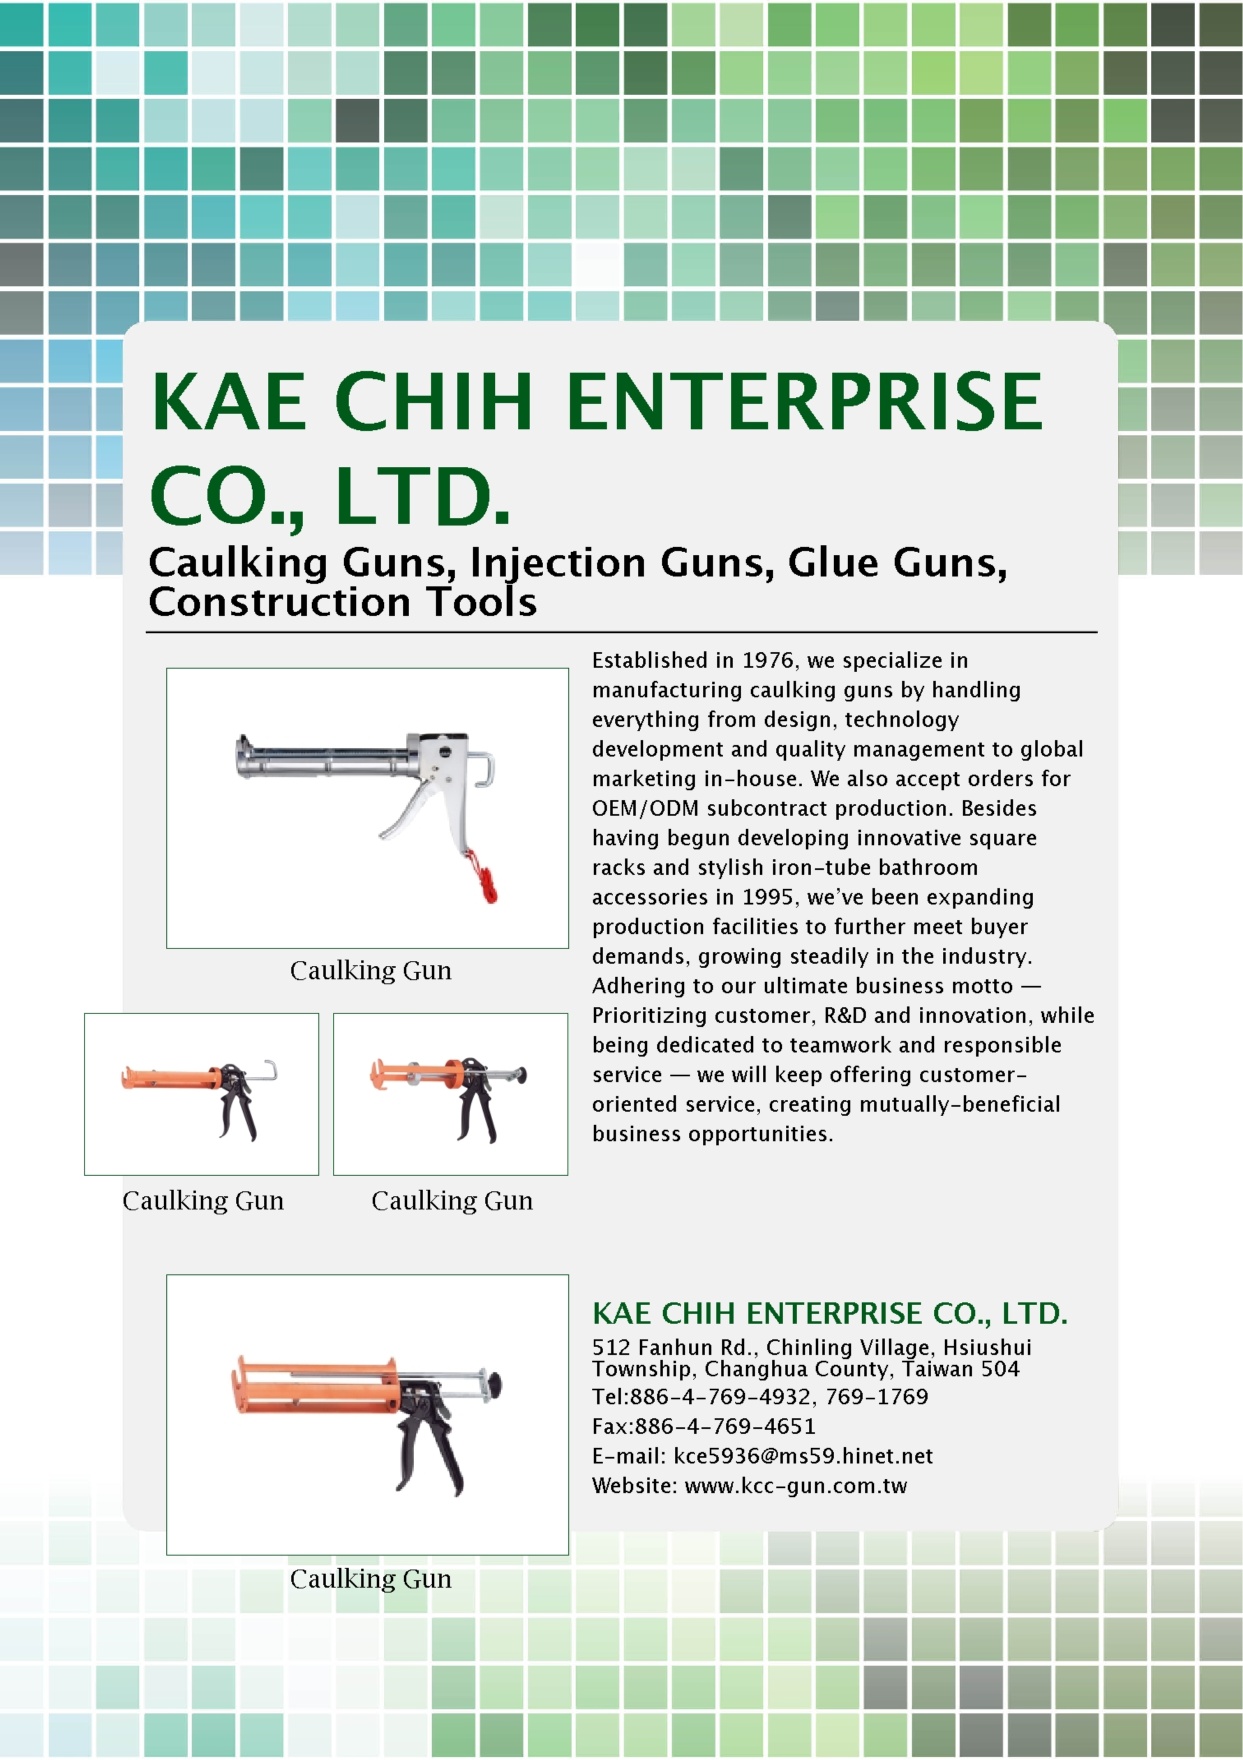 KAE CHIH ENTERPRISE CO., LTD.